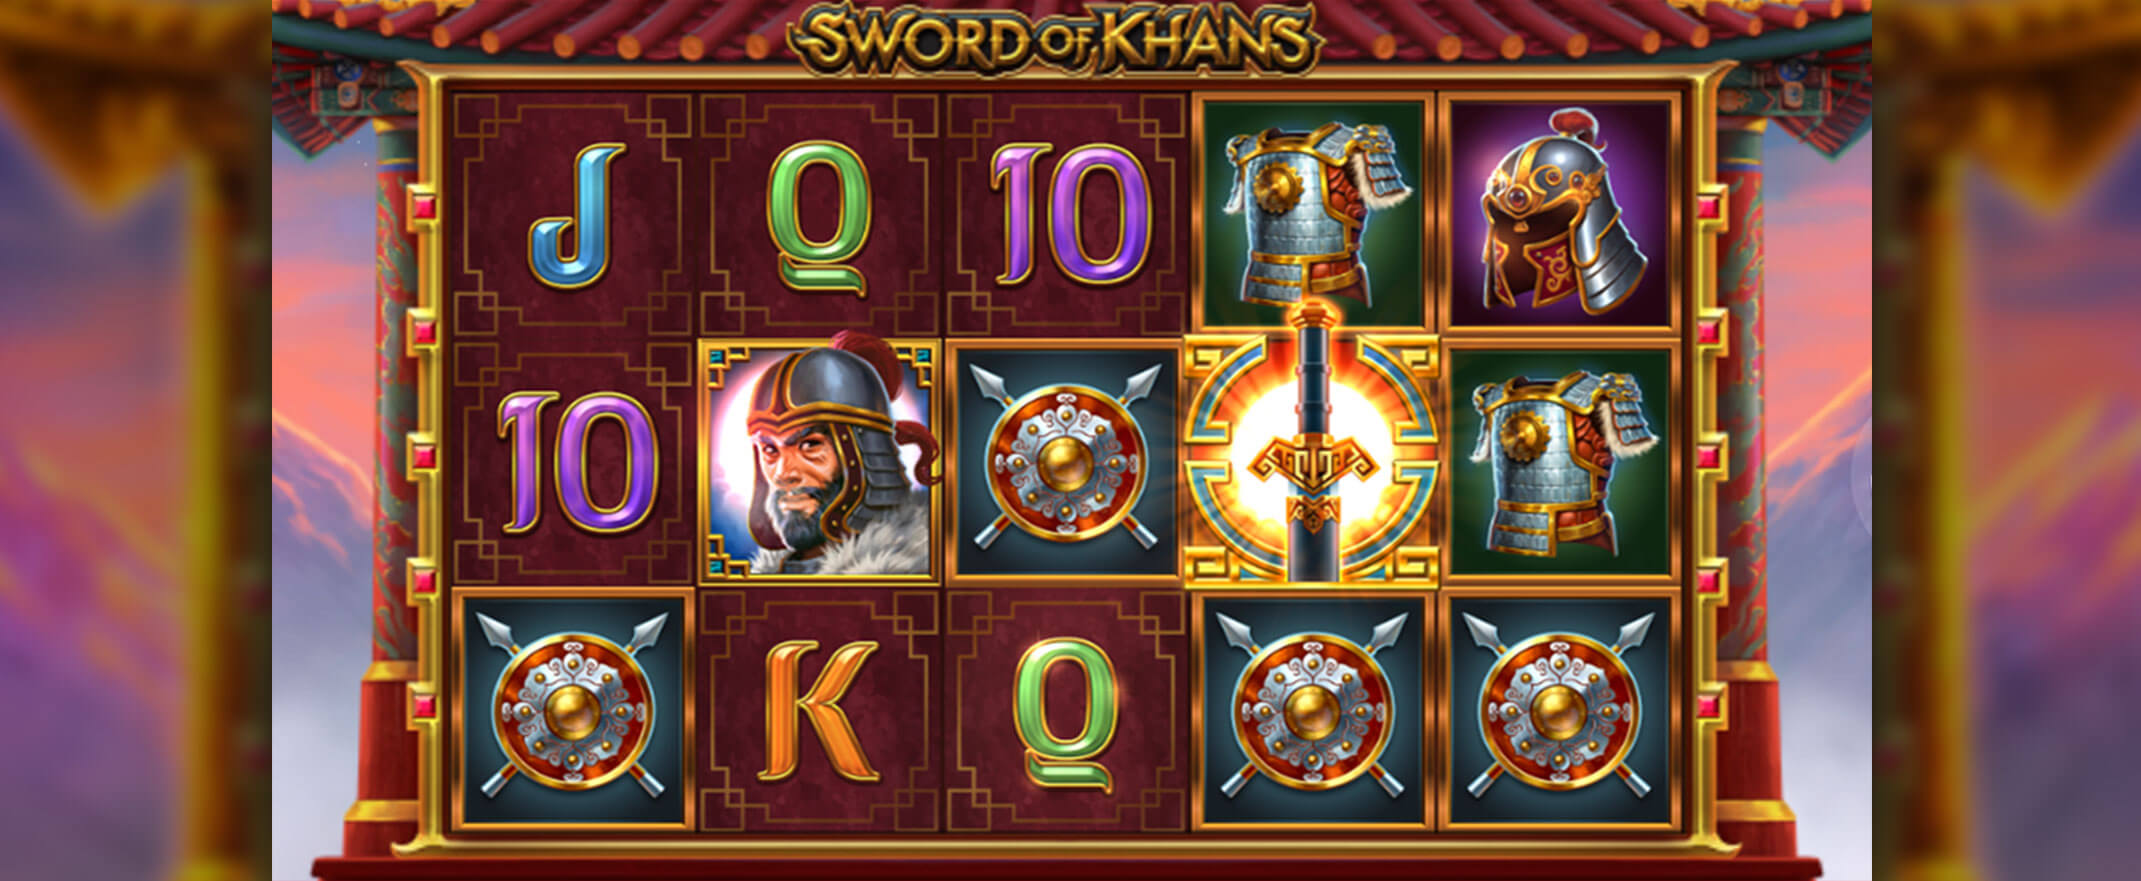 Sword of Khans slot by Thunderkick